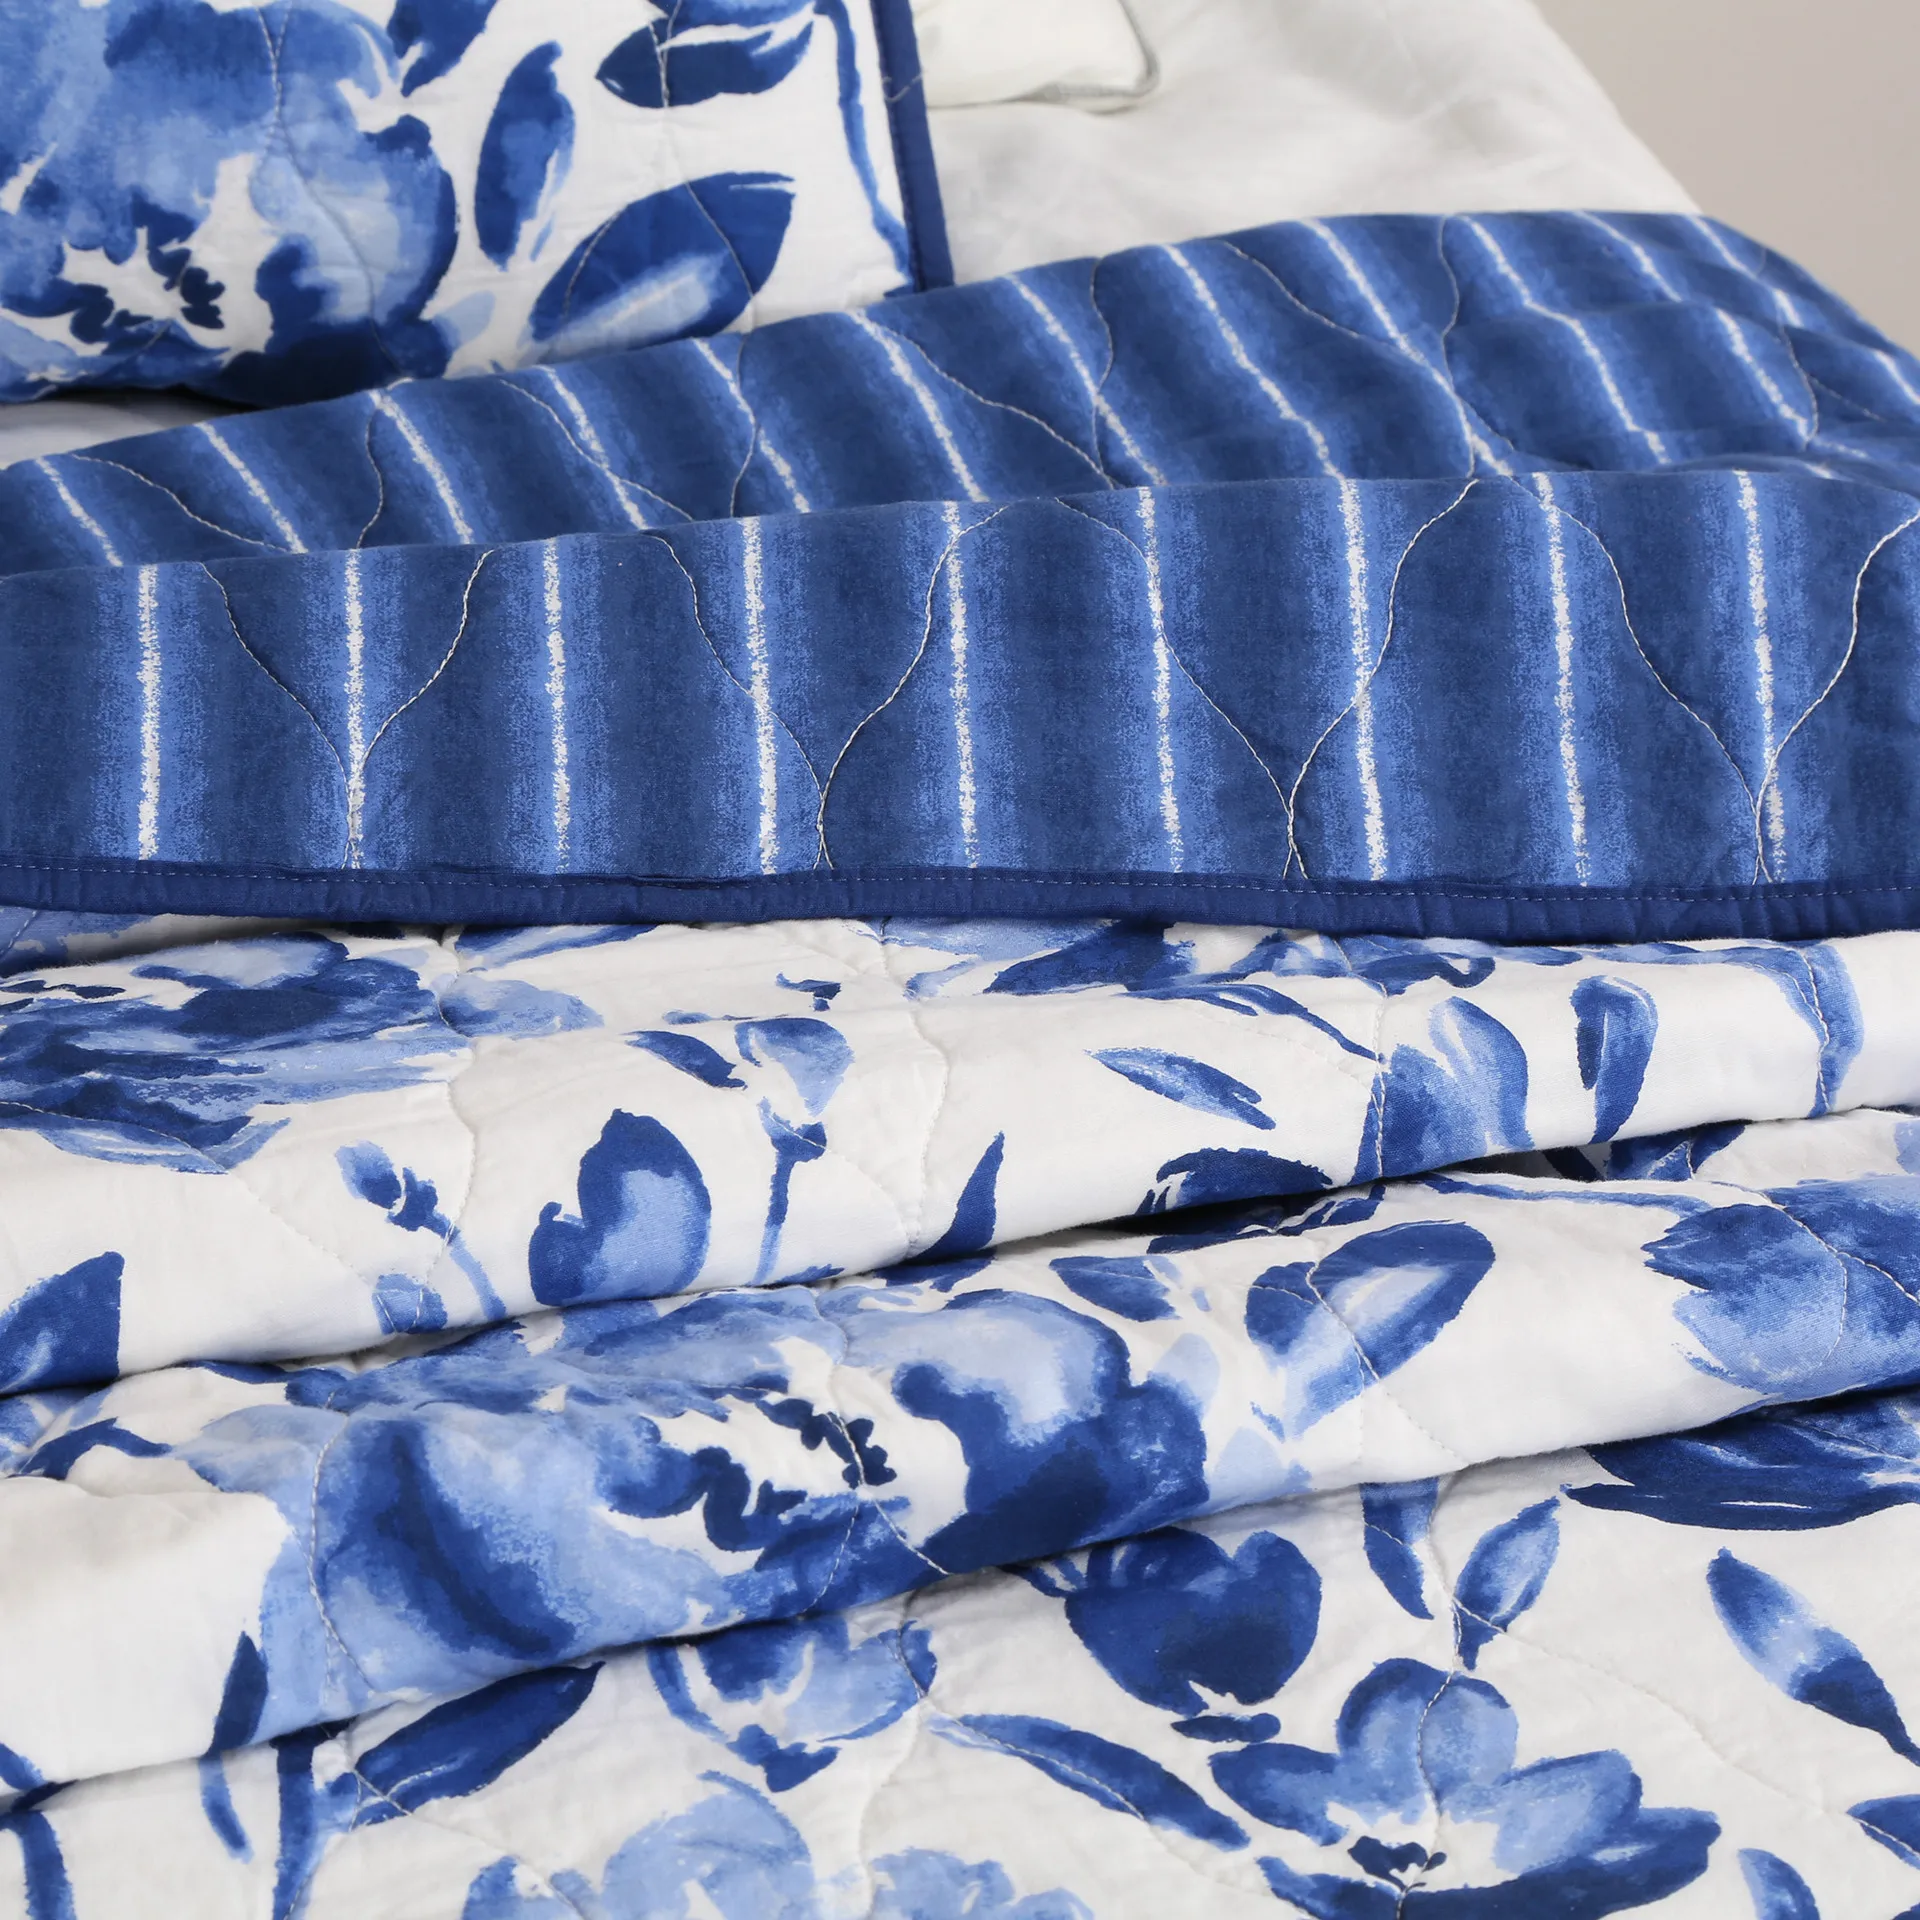 Синий и белый фарфор хлопок комплект стеганого постельного белья Полный Размер Королева 3 шт, китайский стиль стеганое одеяло с цветочным узором набор постельного белья